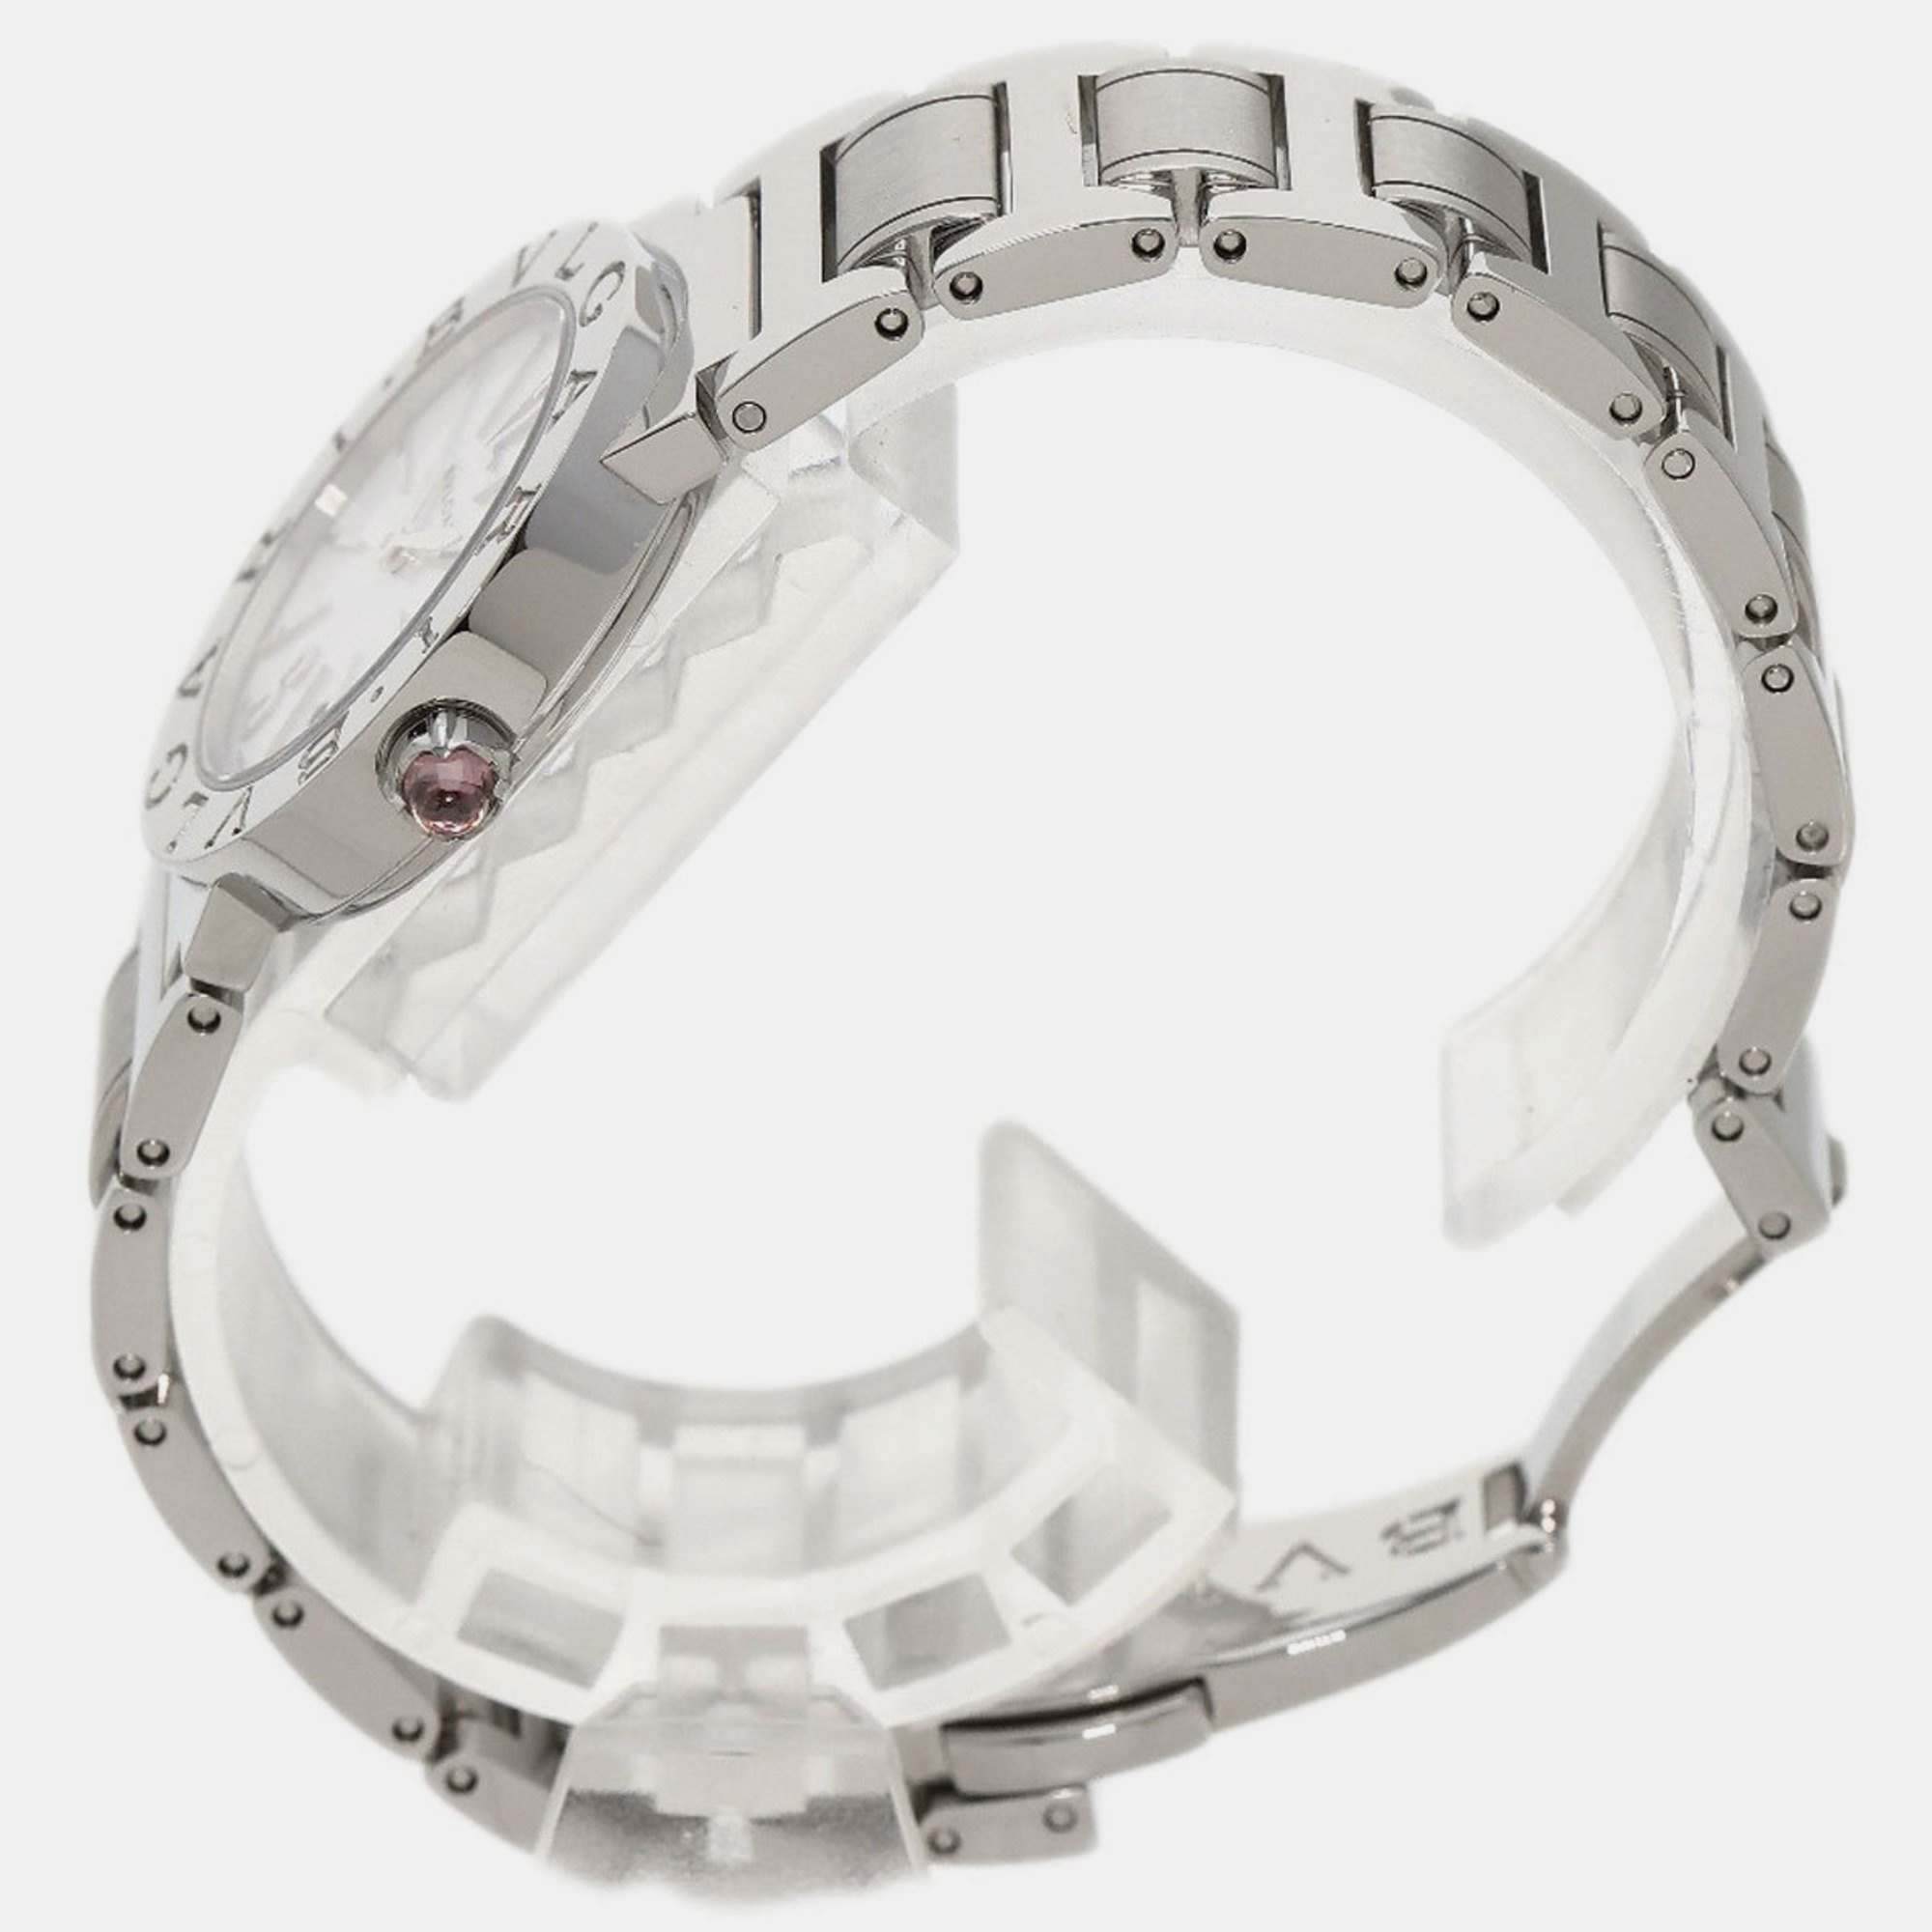 Bvlgari White Shell Stainless Steel Bvlgari Bvlgari BBL26S Quartz Women's Wristwatch 26 Mm